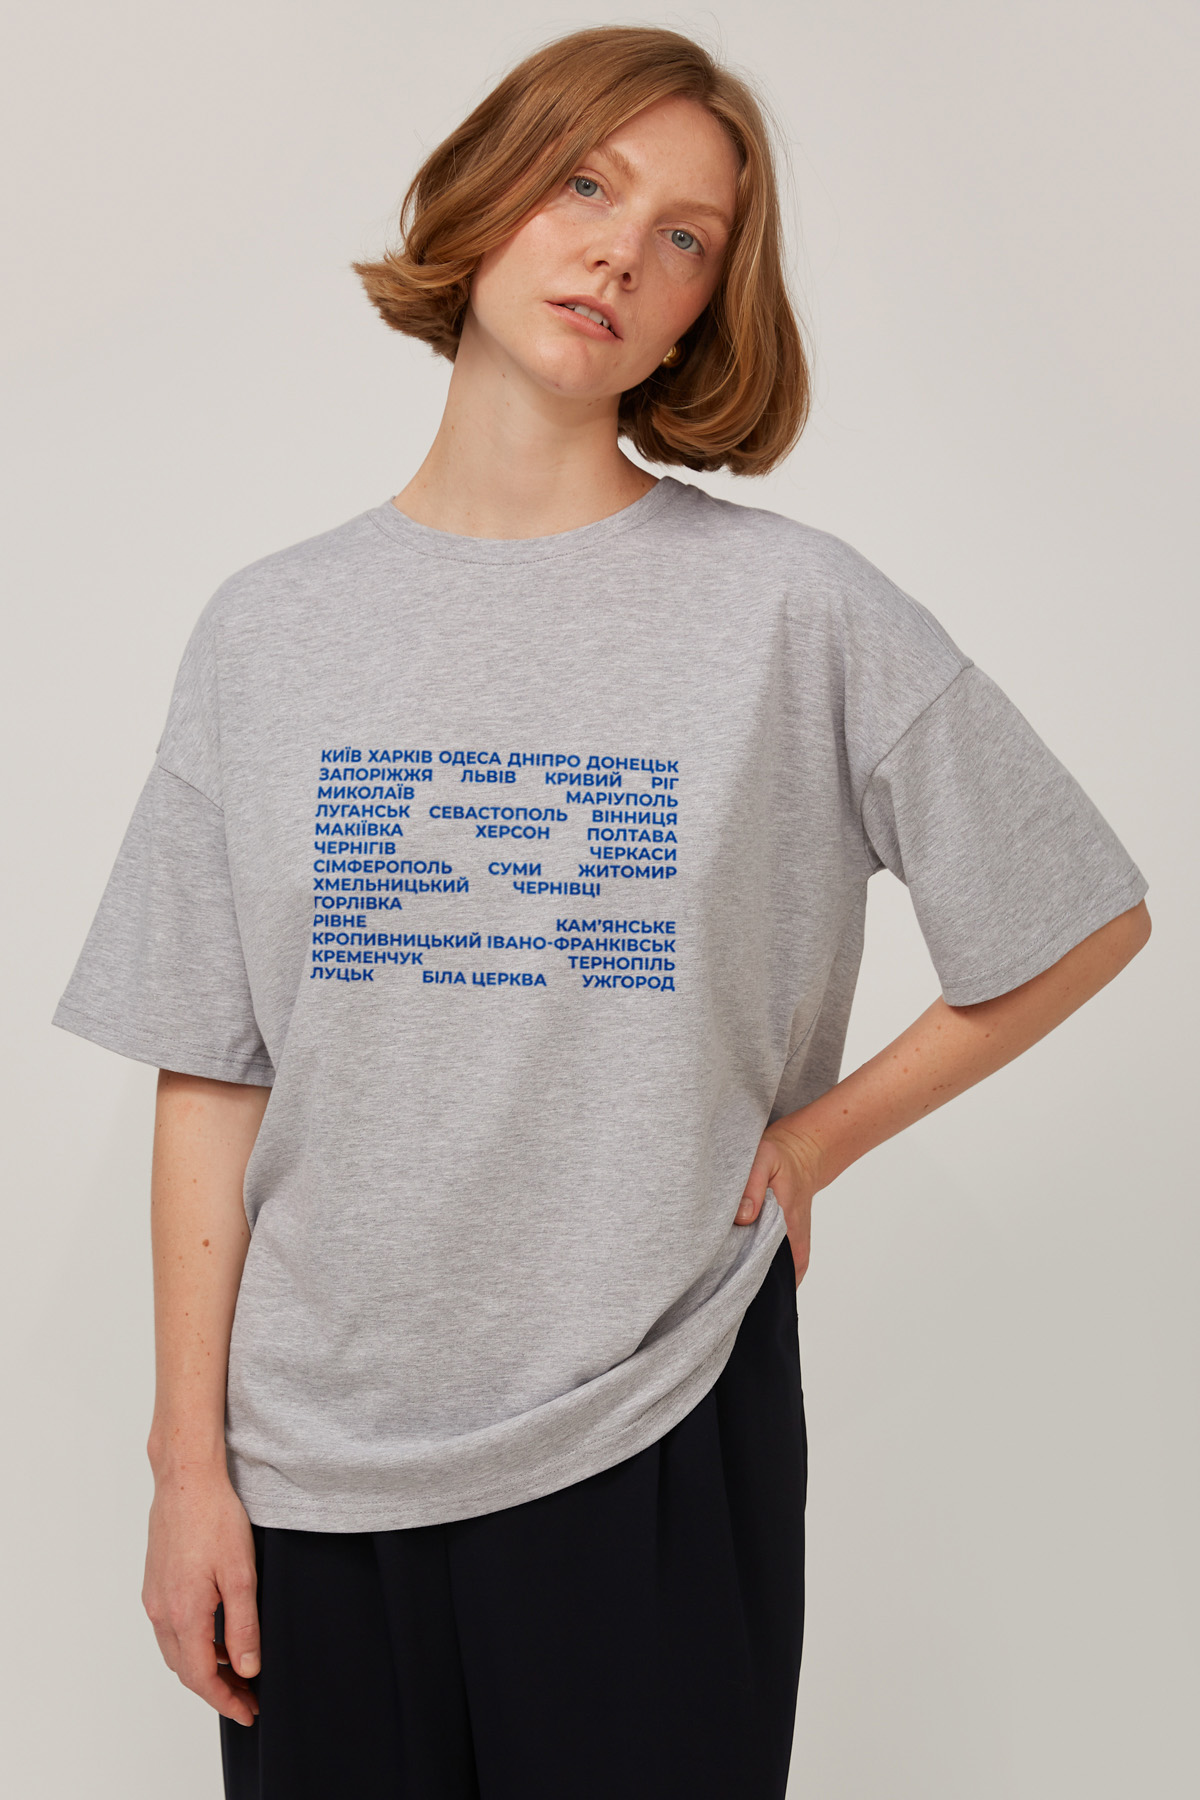 Сіро-меланжева трикотажна футболка з написом "Міста", фото 1